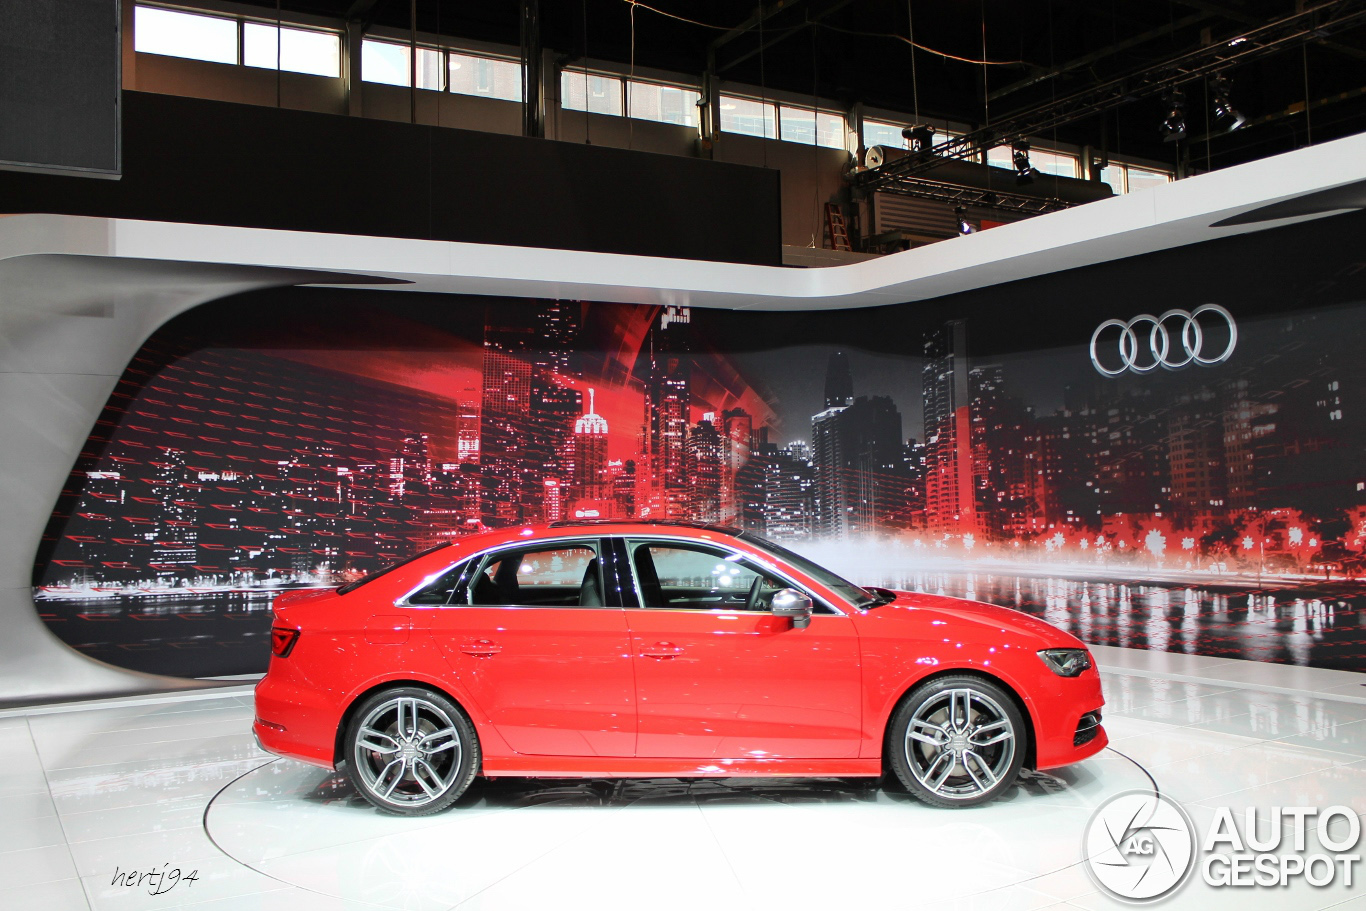 Mobil Audi S3 Terbaru Dan Spesifikasinya